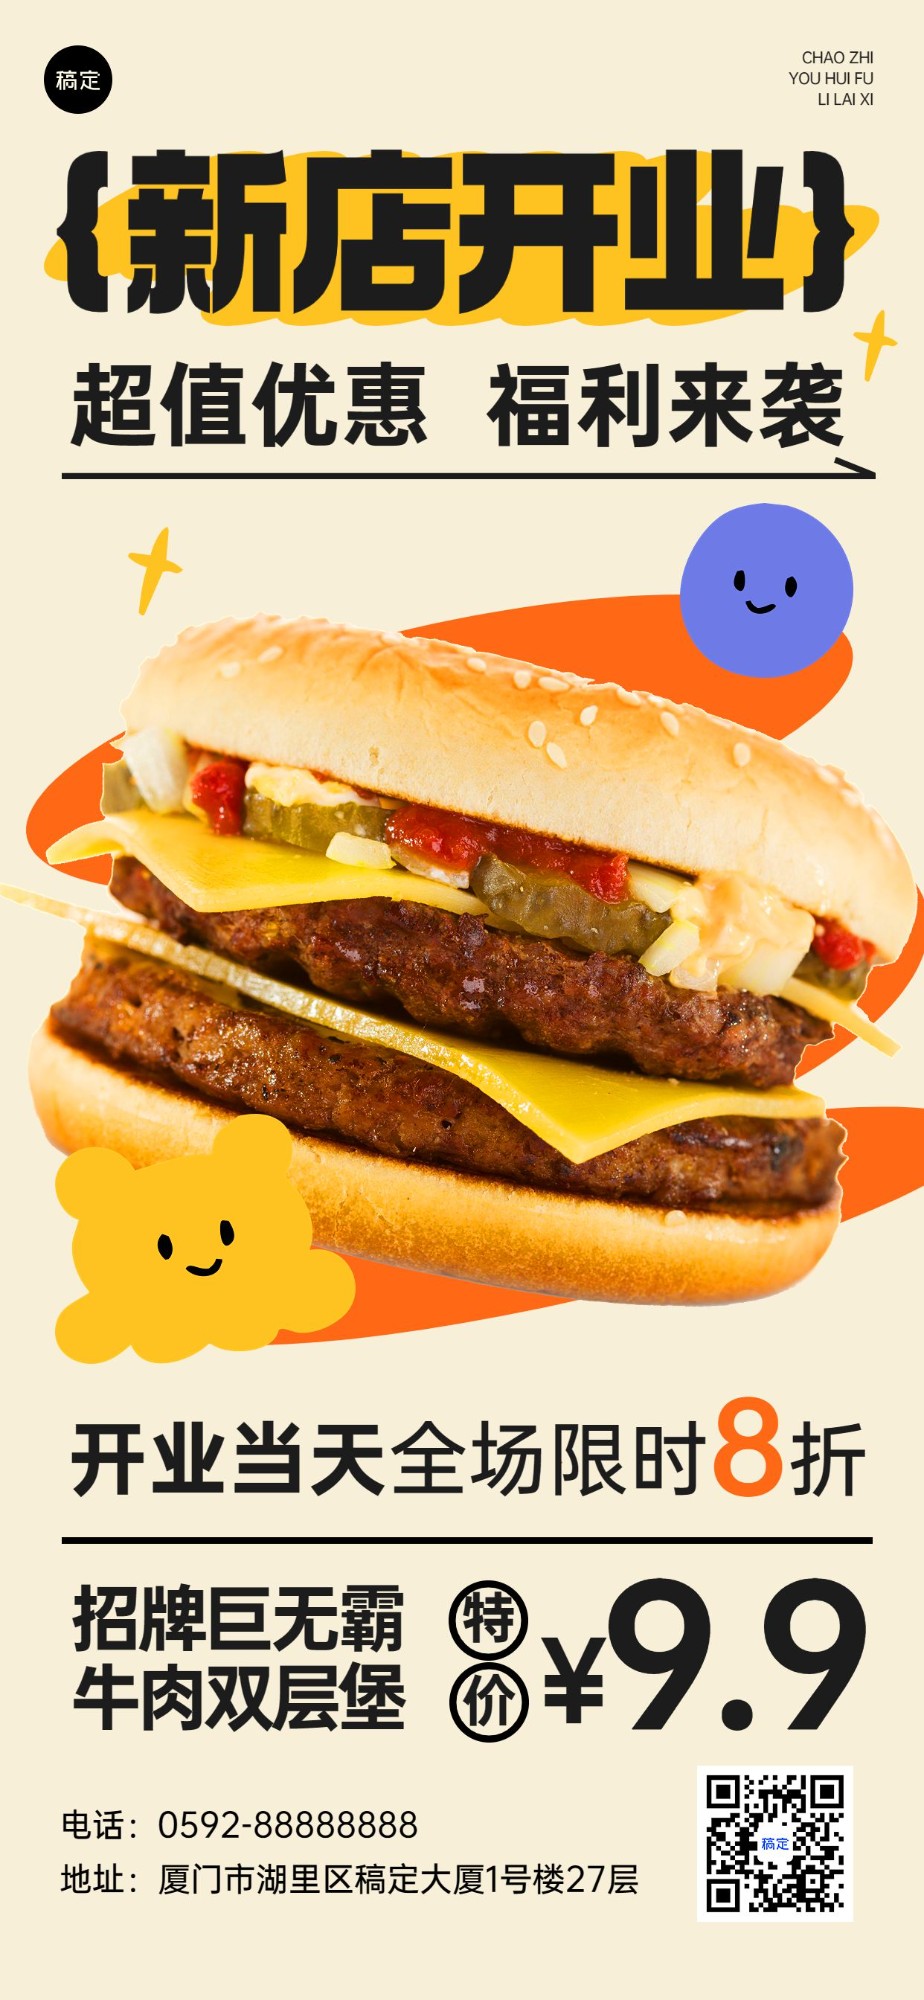 餐饮美食速食快餐新店开业限时福利全屏竖版海报预览效果